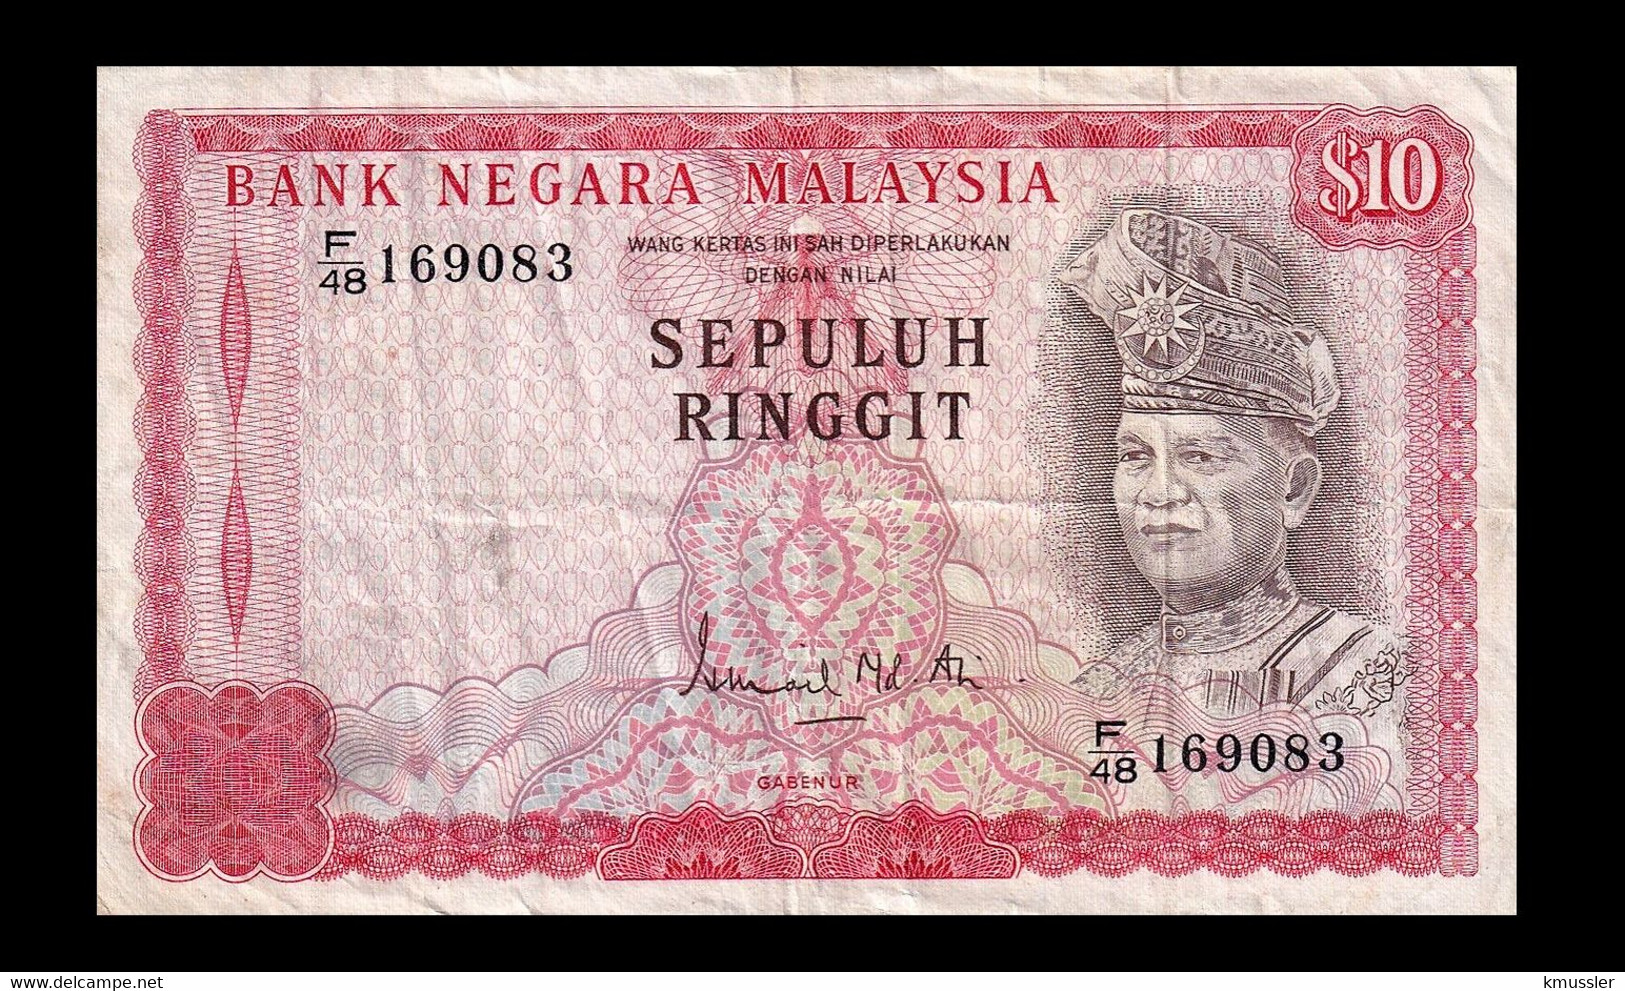 # # # Banknote Malaysien (Malaysia) 10 Ringgit # # # - Malaysia